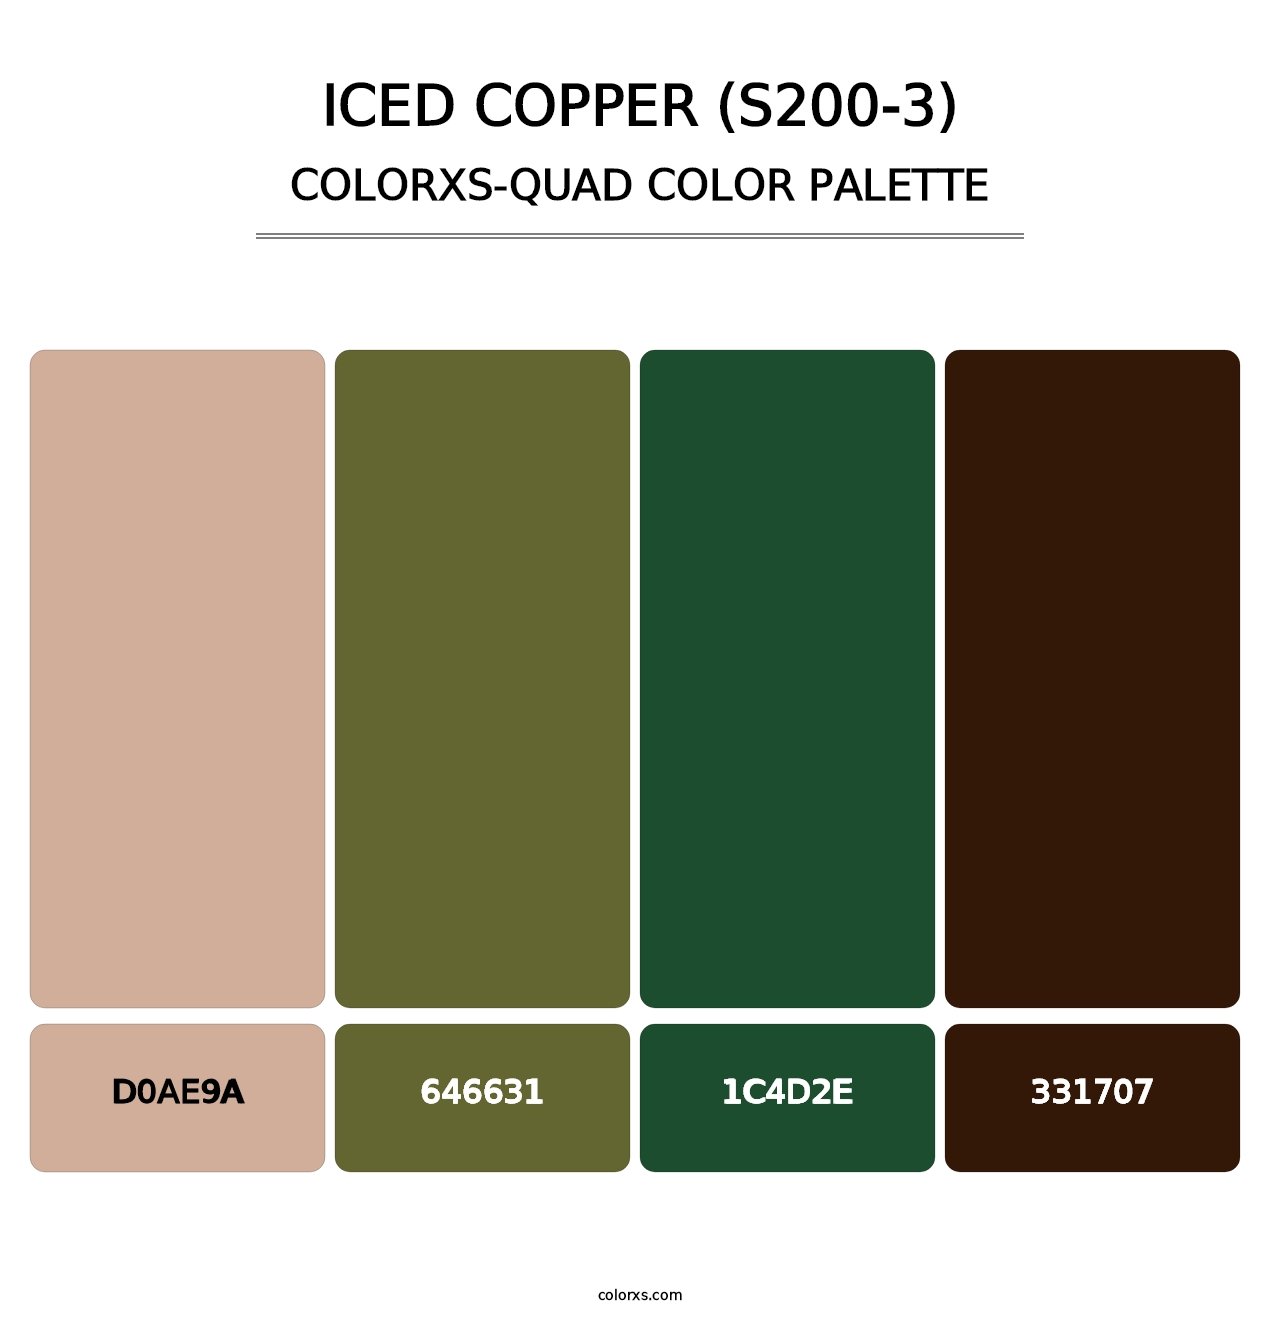 Iced Copper (S200-3) - Colorxs Quad Palette